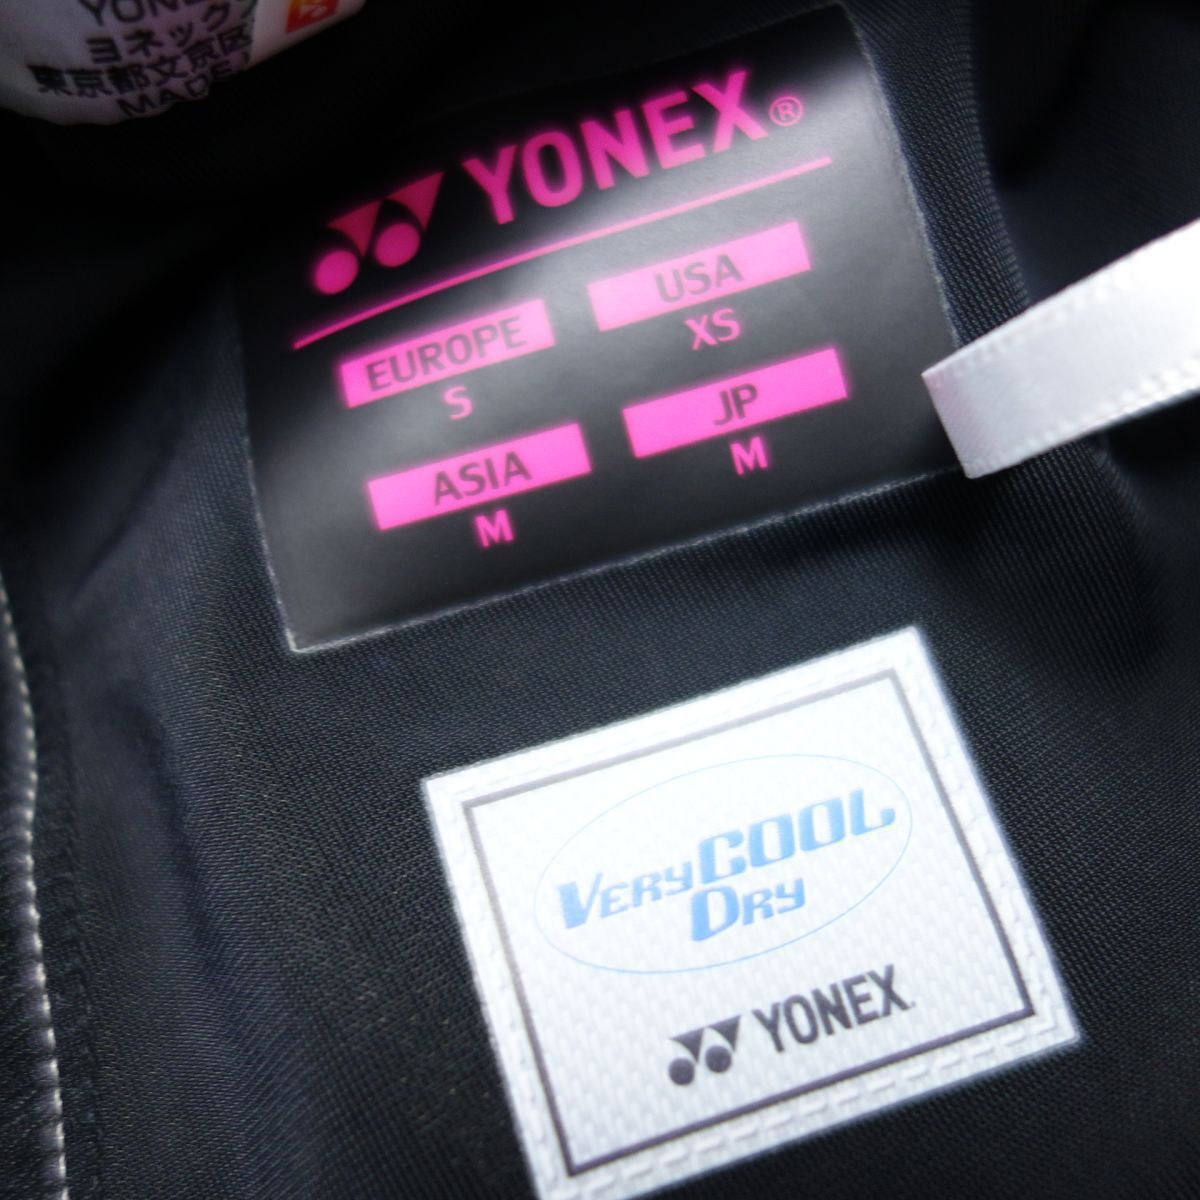  прекрасный товар 4 пункт . суммировать YONEX Yonex шорты шорты женский M/S спорт одежда bato Minton теннис настольный теннис 